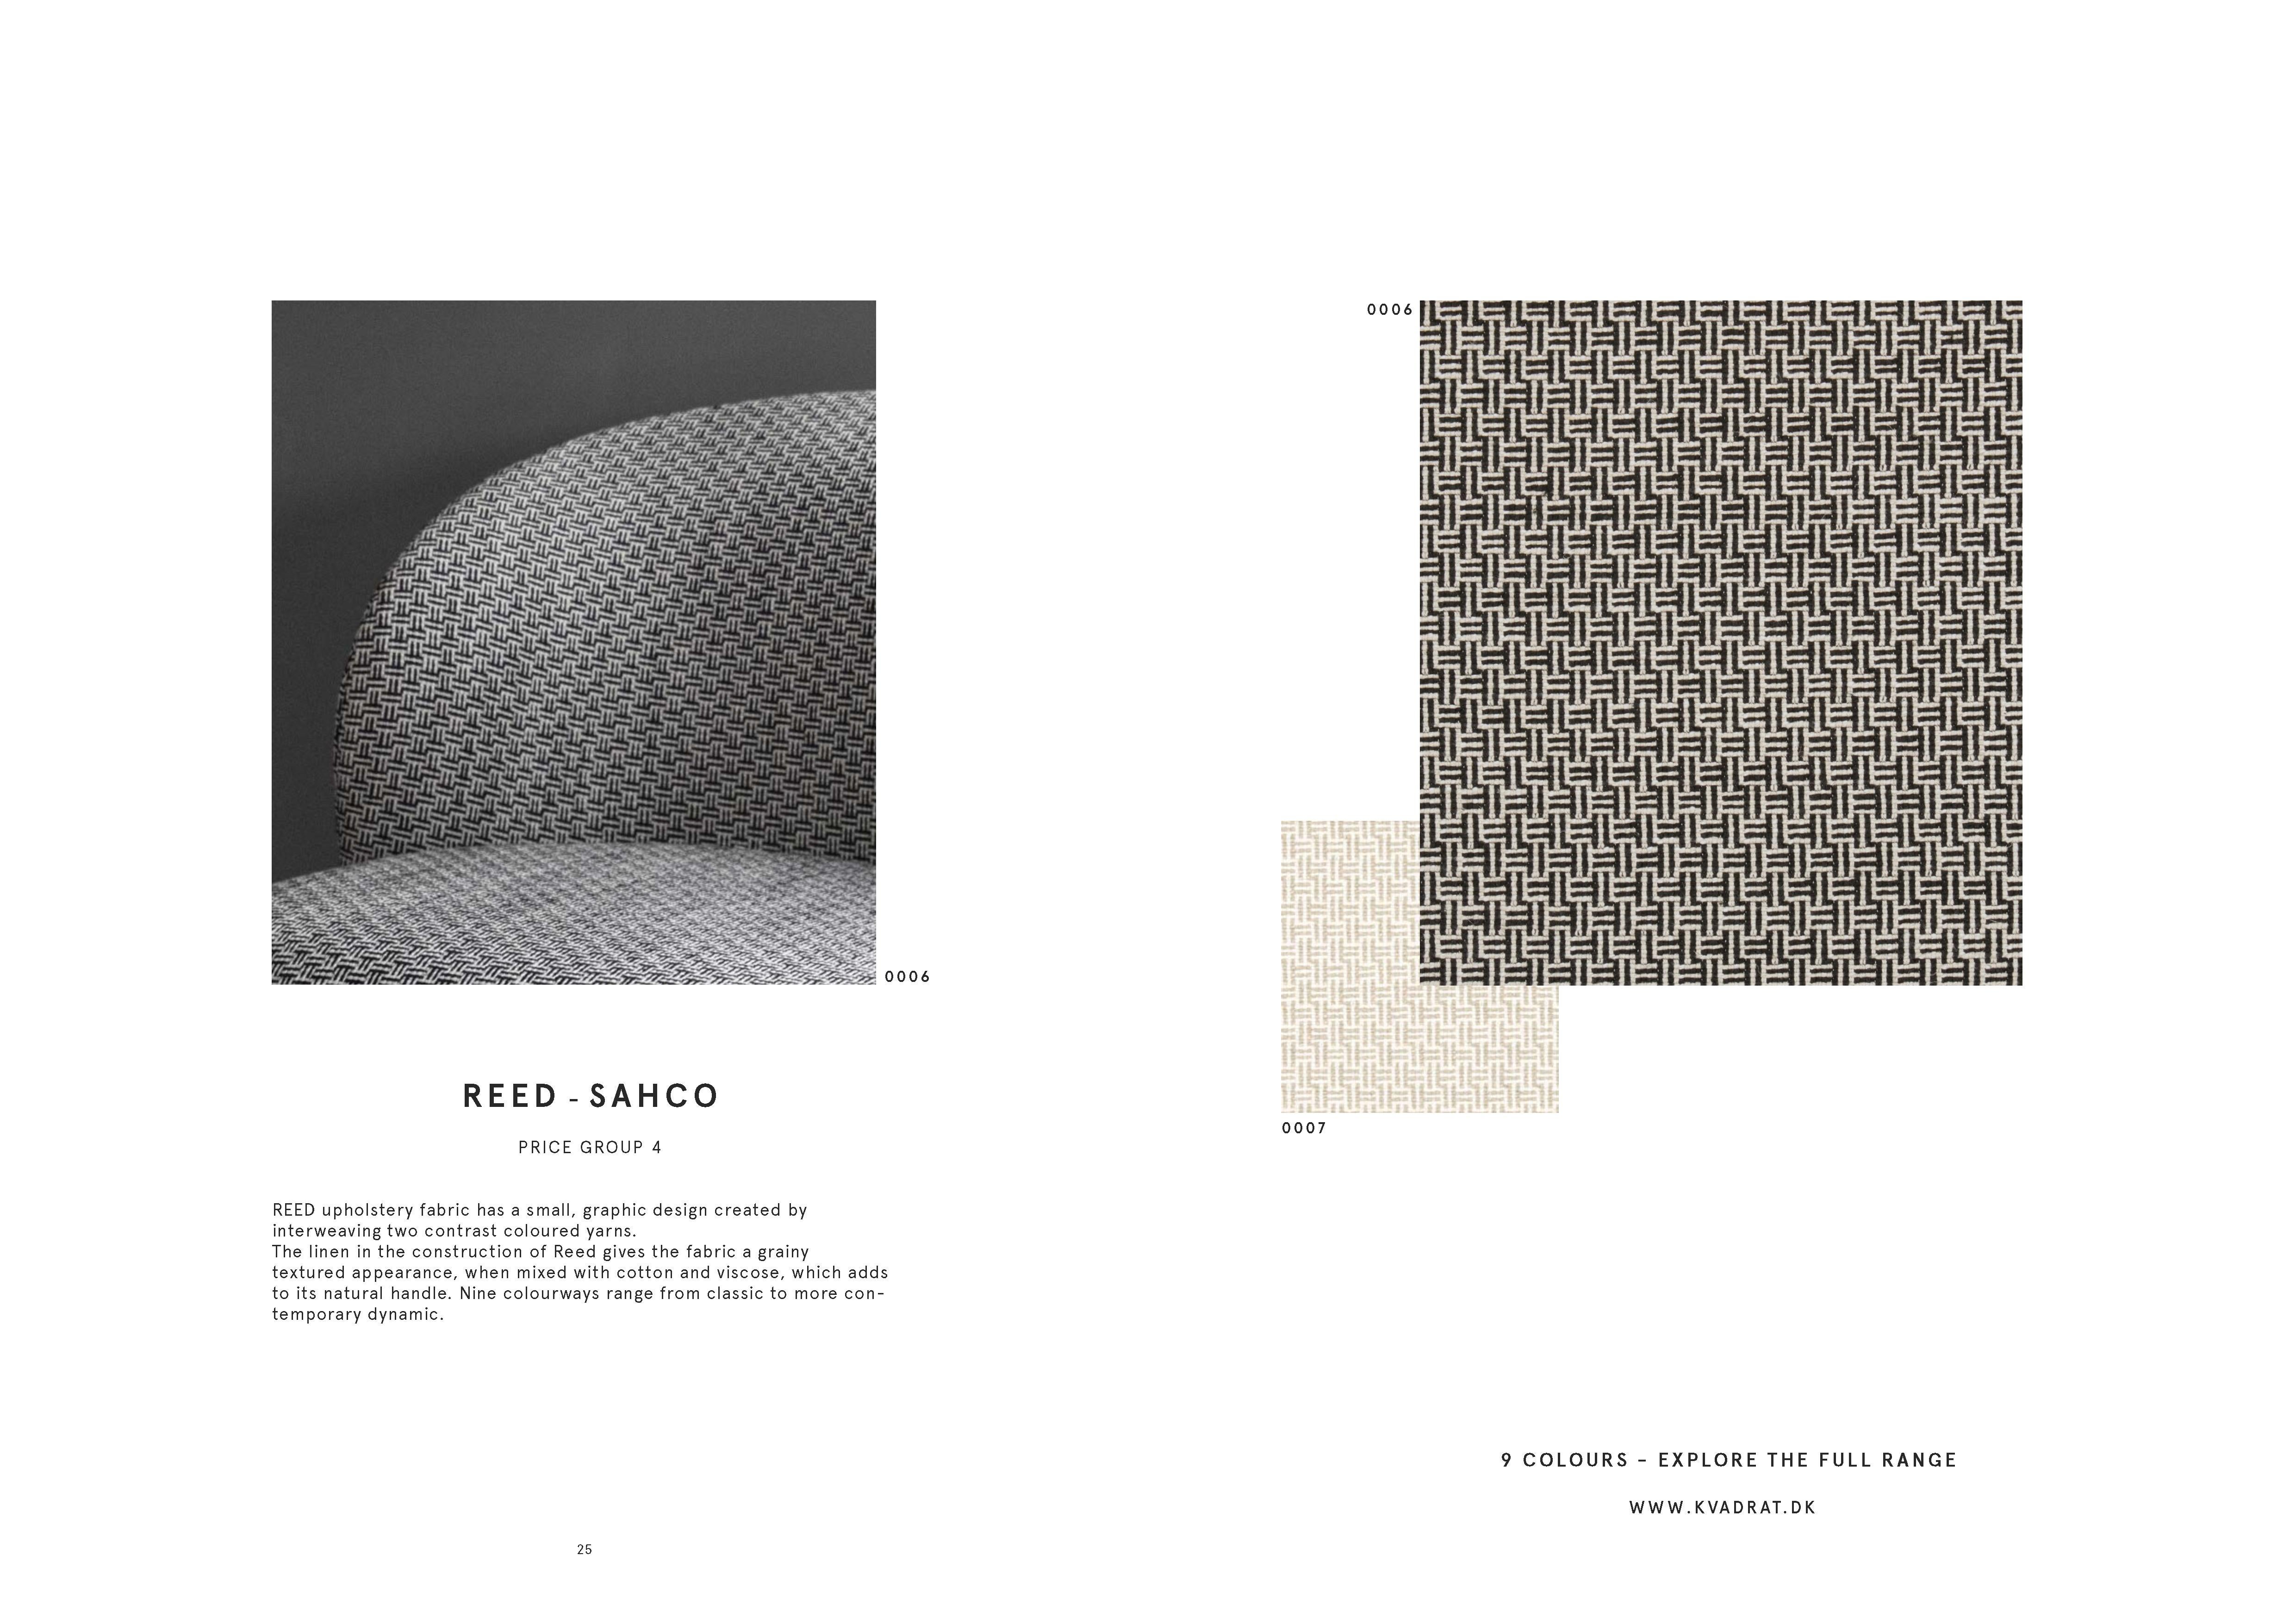 Contemporary Armchair 'Novel' with Bouclé Fabric, Karakorum 001 For Sale 4